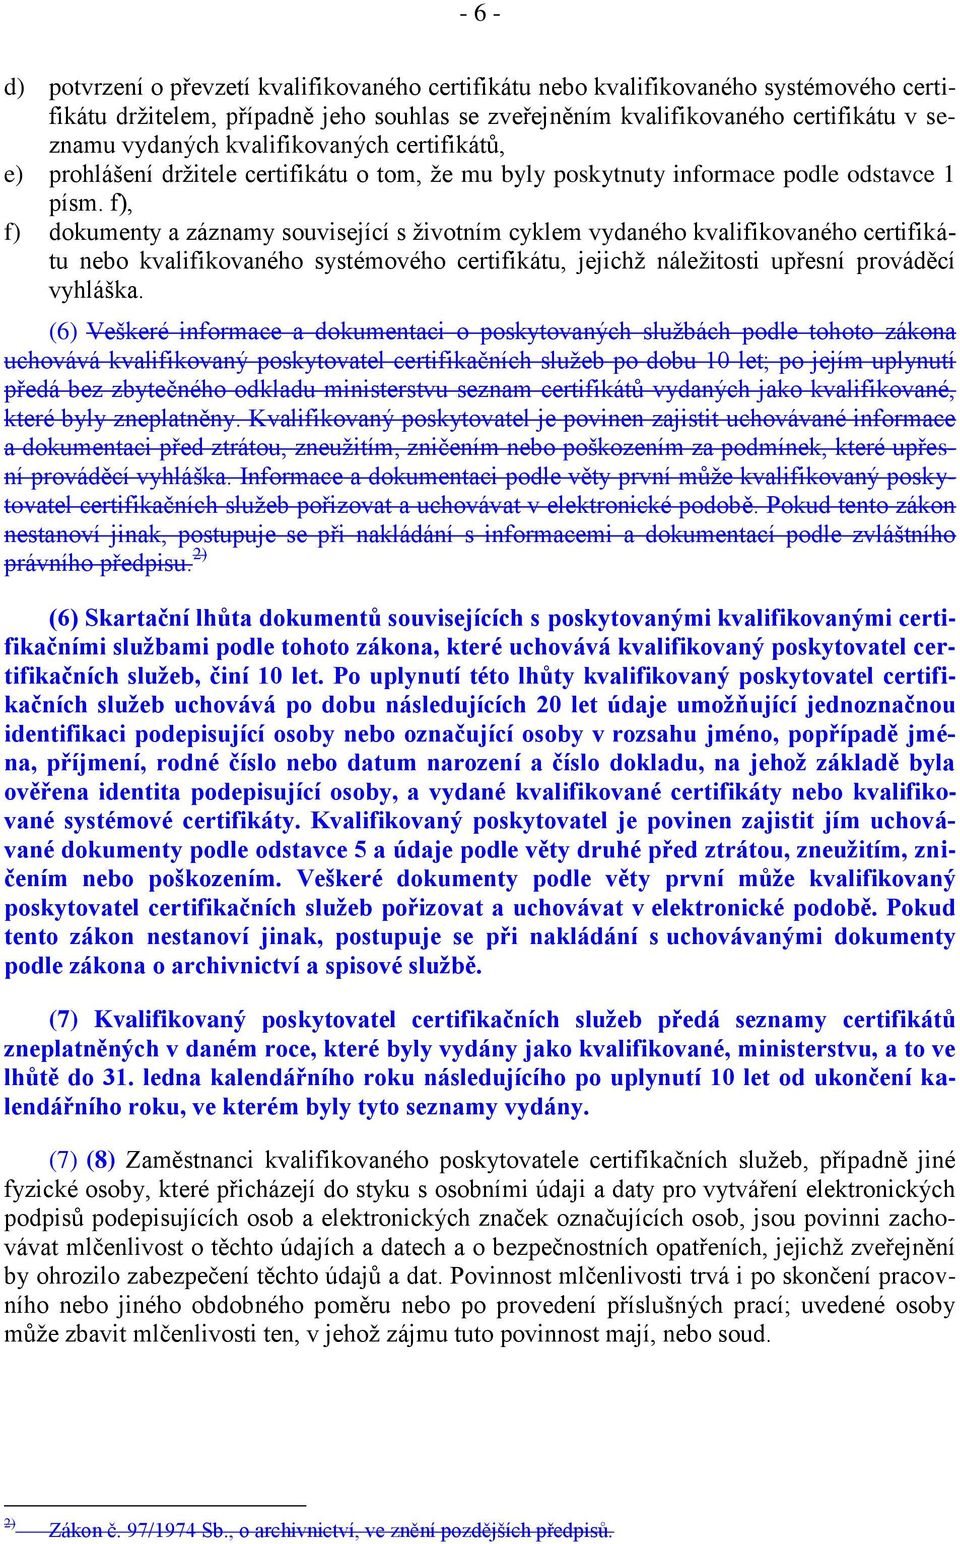 f), f) dokumenty a záznamy související s životním cyklem vydaného kvalifikovaného certifikátu nebo kvalifikovaného systémového certifikátu, jejichž náležitosti upřesní prováděcí vyhláška.